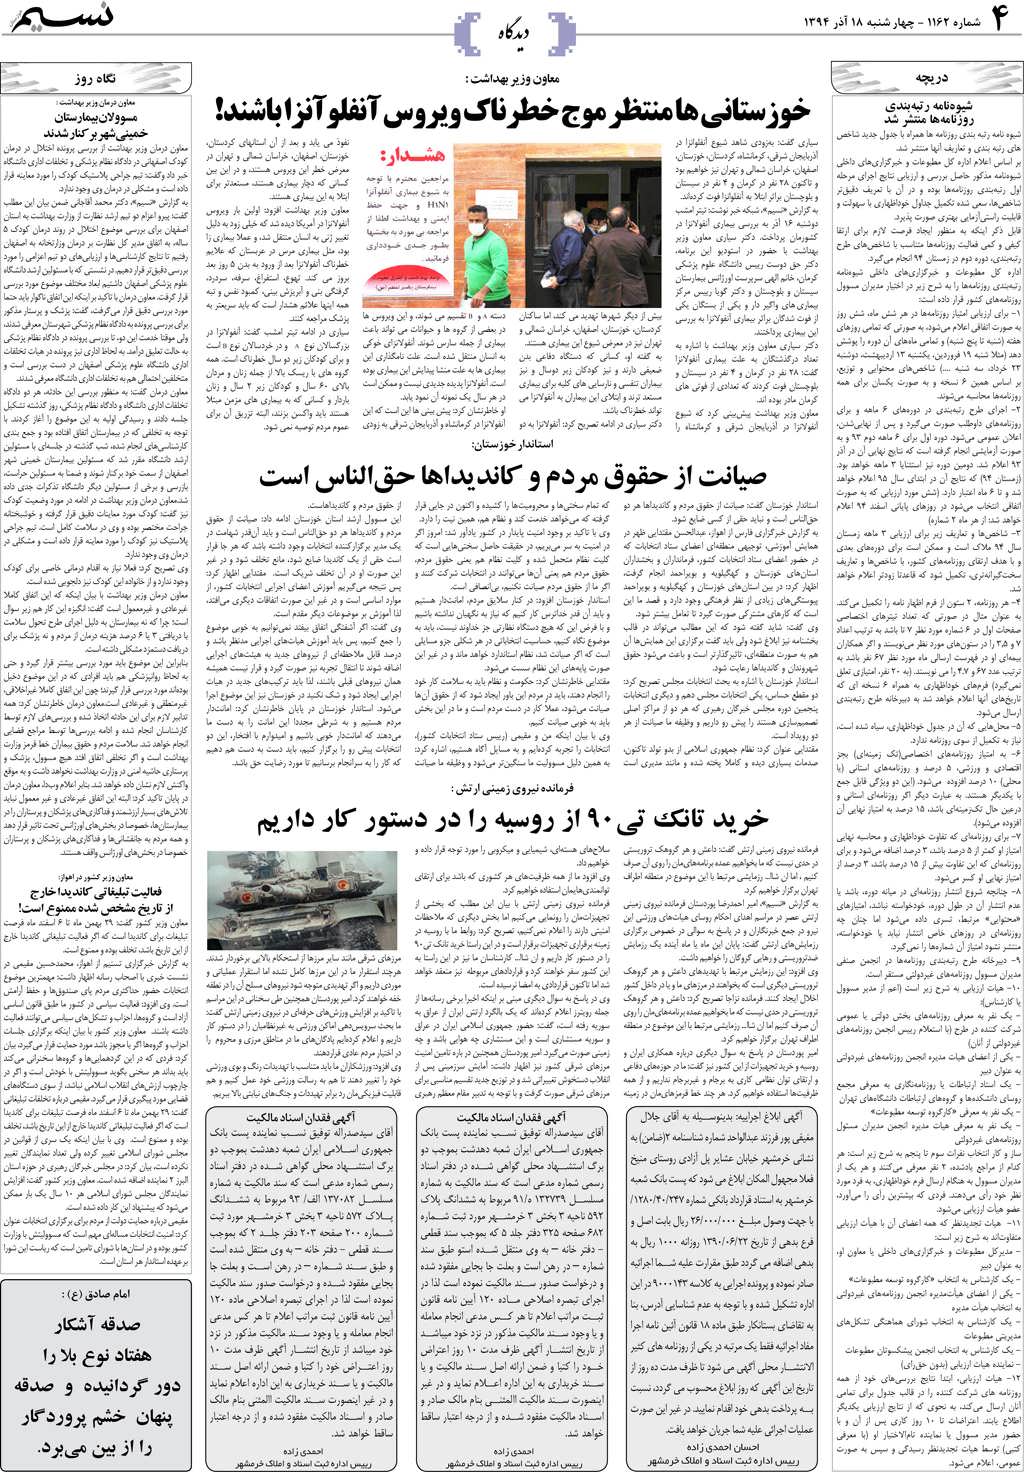 صفحه دیدگاه روزنامه نسیم شماره 1162